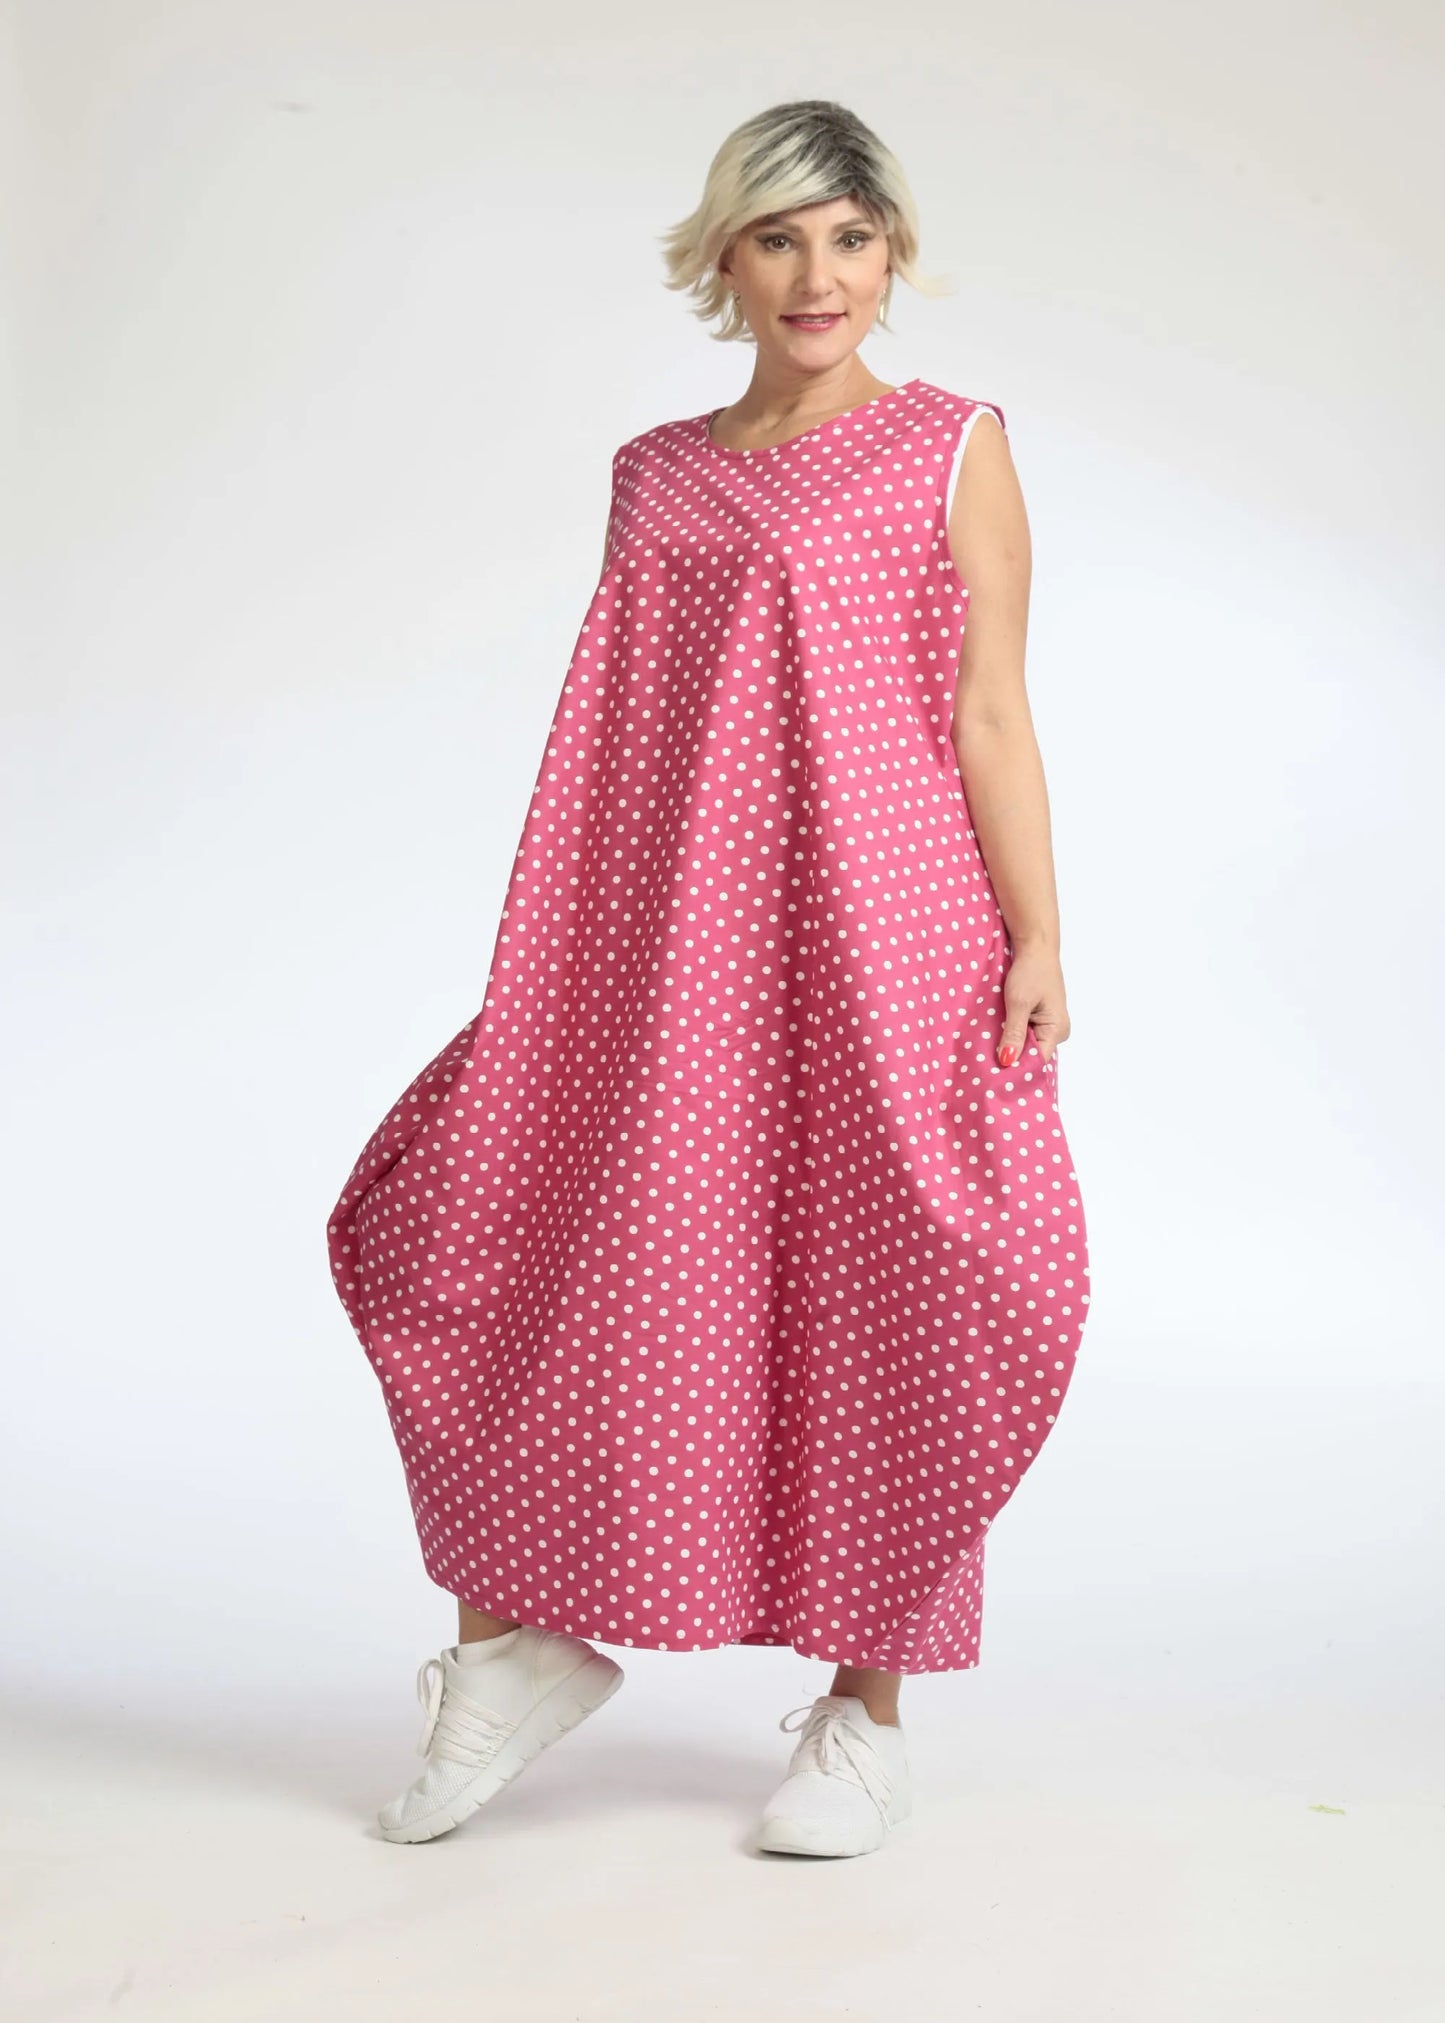 Sommer Kleid in Ballon Form aus glatter Popeline Qualität, Freya in Pink-Weiß